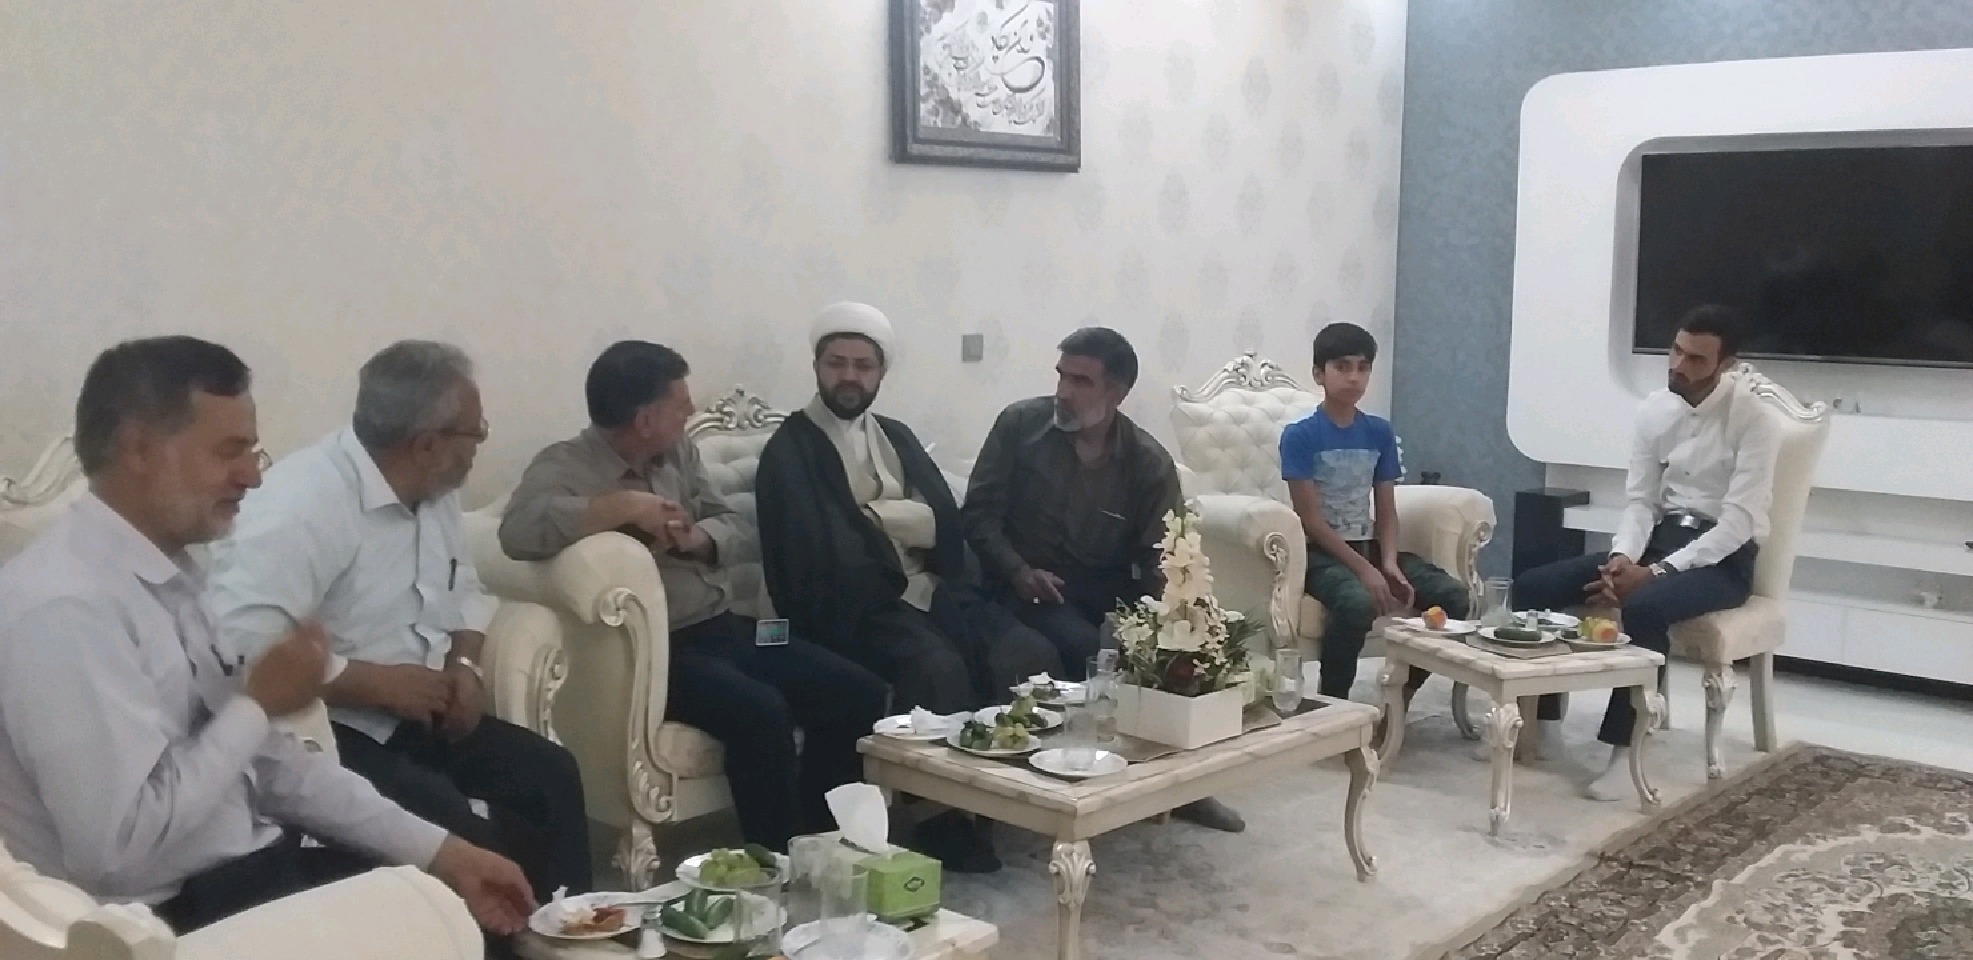 حضور امام جمعه محترم شهر قهدریجان در منزل اقای زمانی از اعضا ستاد نماز جمعه  برای تبریک ازدواج ایشان